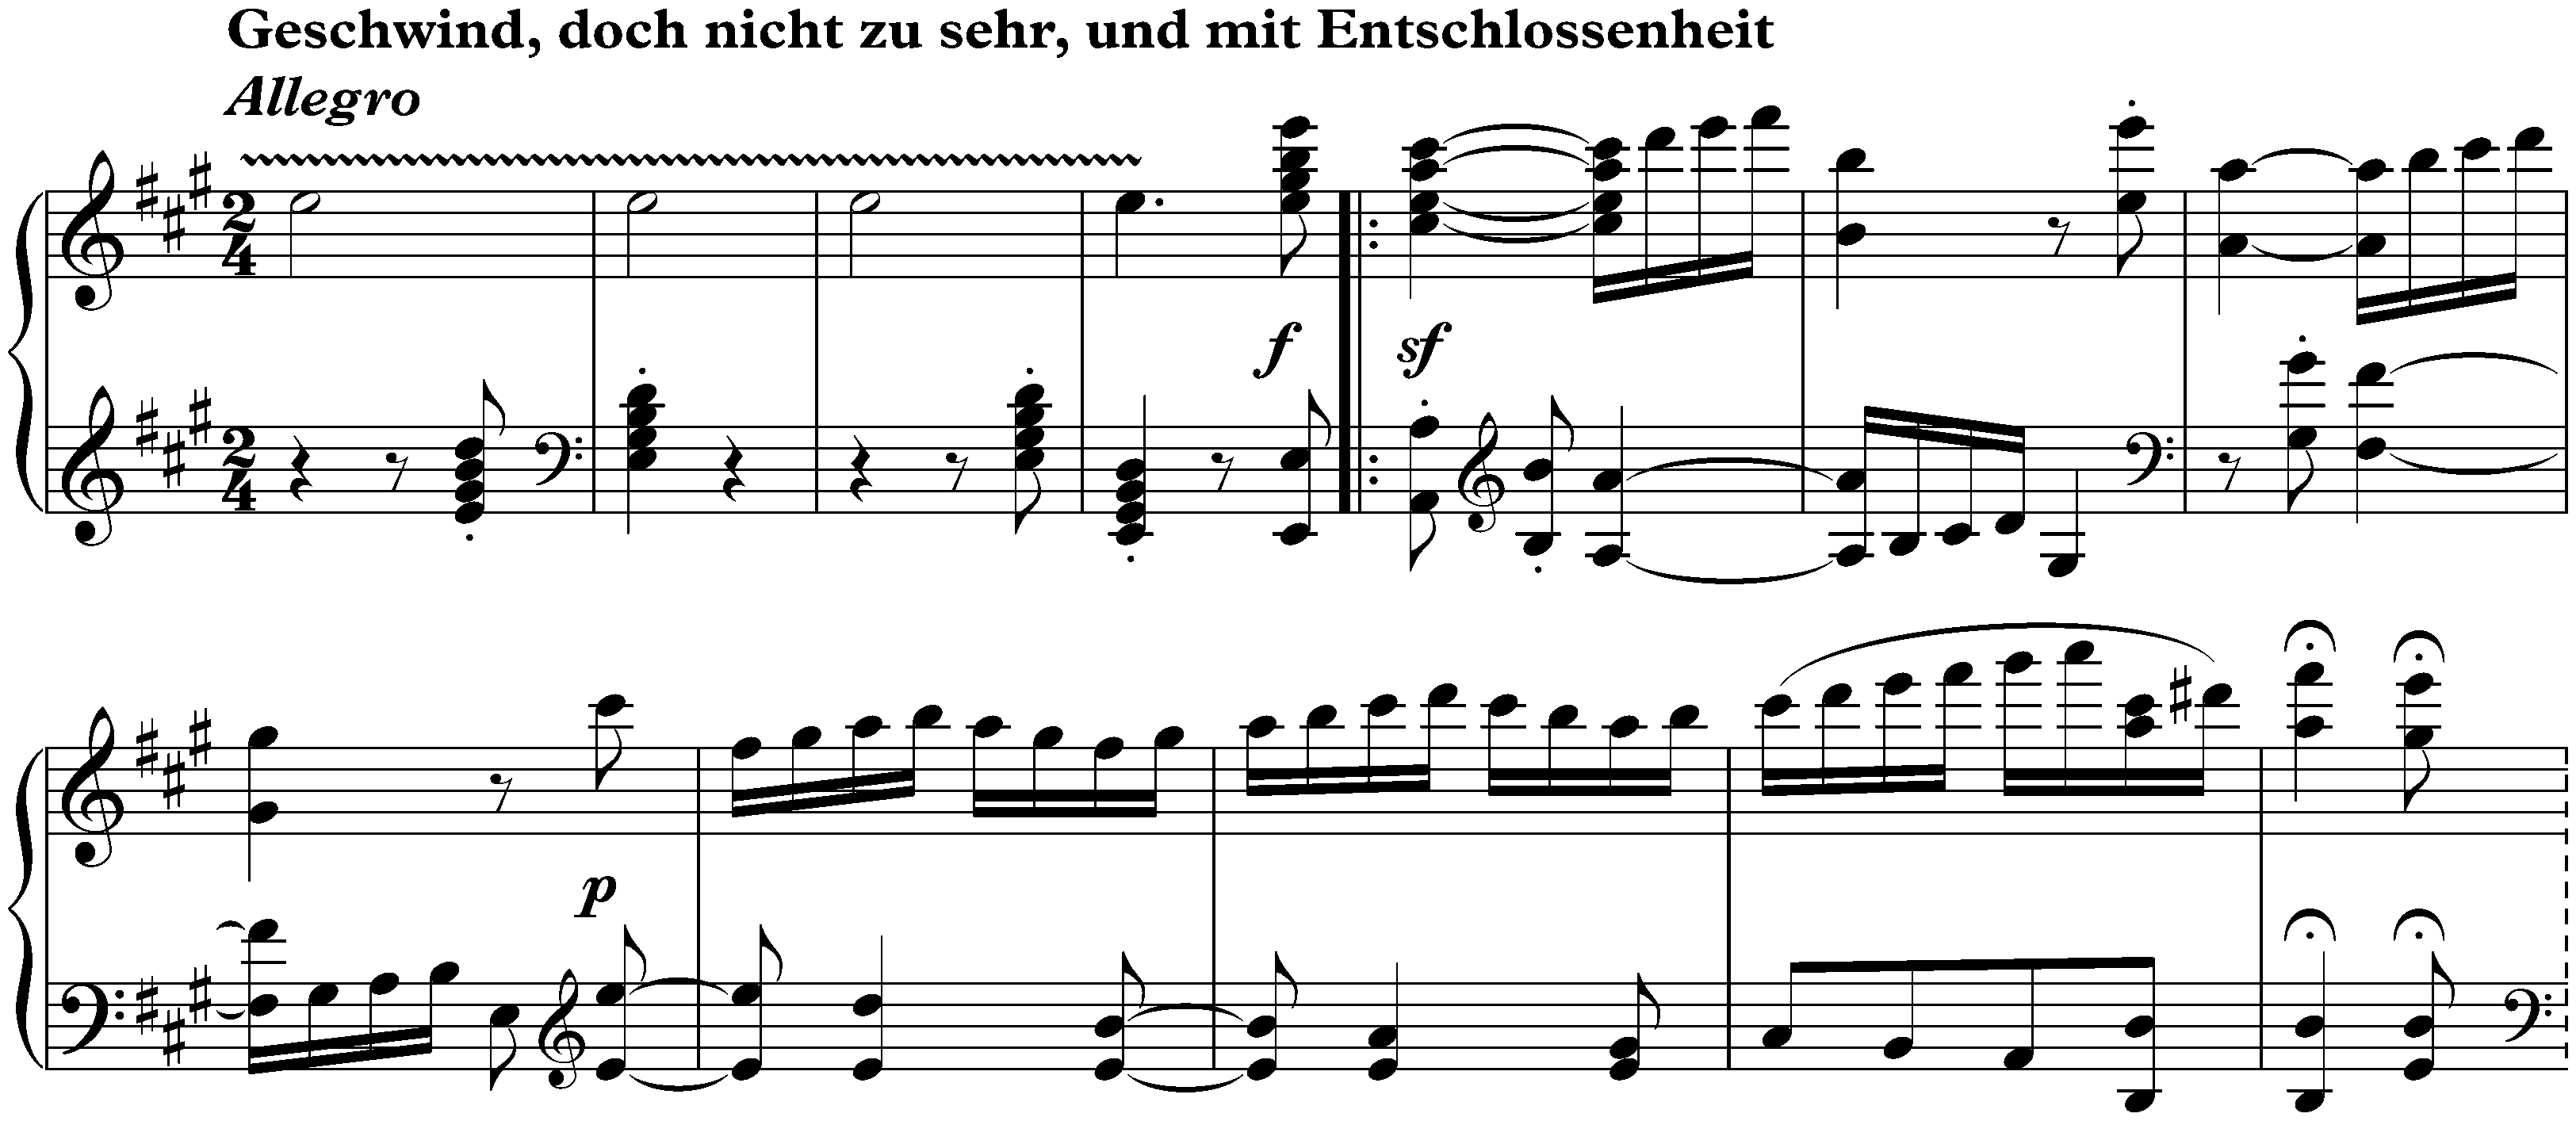 Sonata no. 28 in A major, op. 101; 4. Geschwind, doch nicht zu sehr, und mit Entschlossenheit